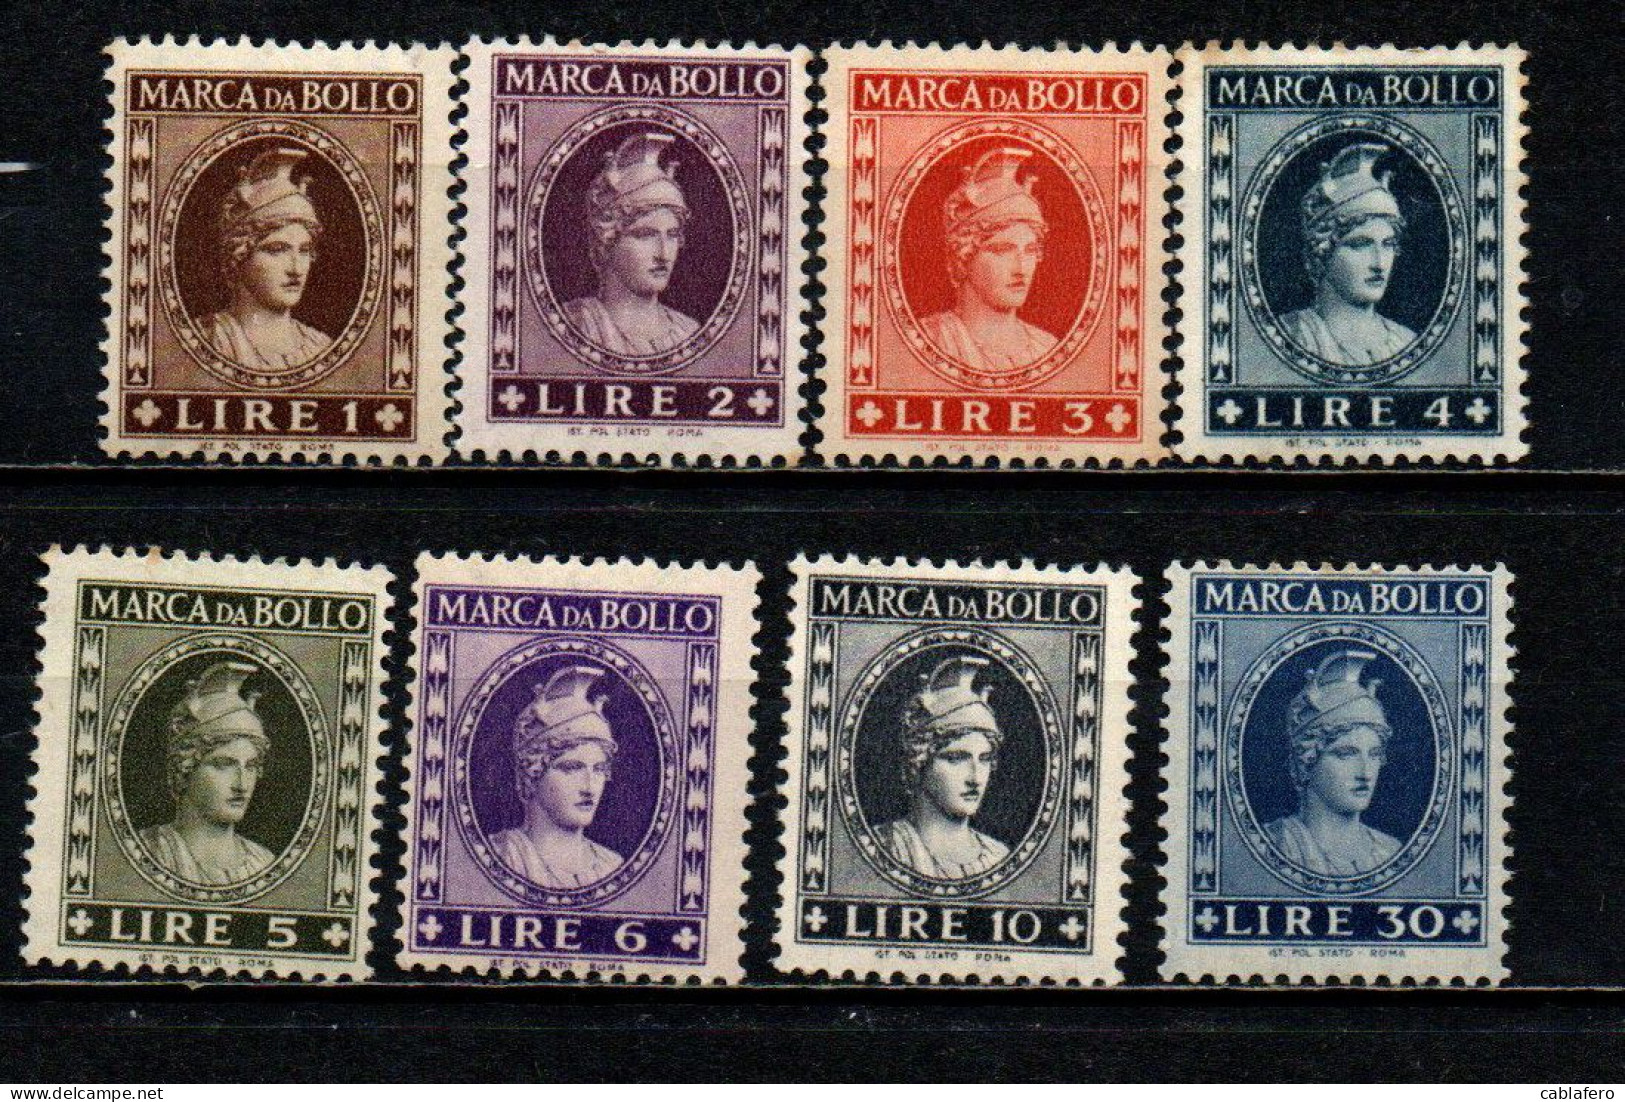 ITALIA REPUBBLICA - 1946 - MARCA DA BOLLO A TASSA FISSA - FILIGRANA RUOTA ALATA - MNH - Revenue Stamps